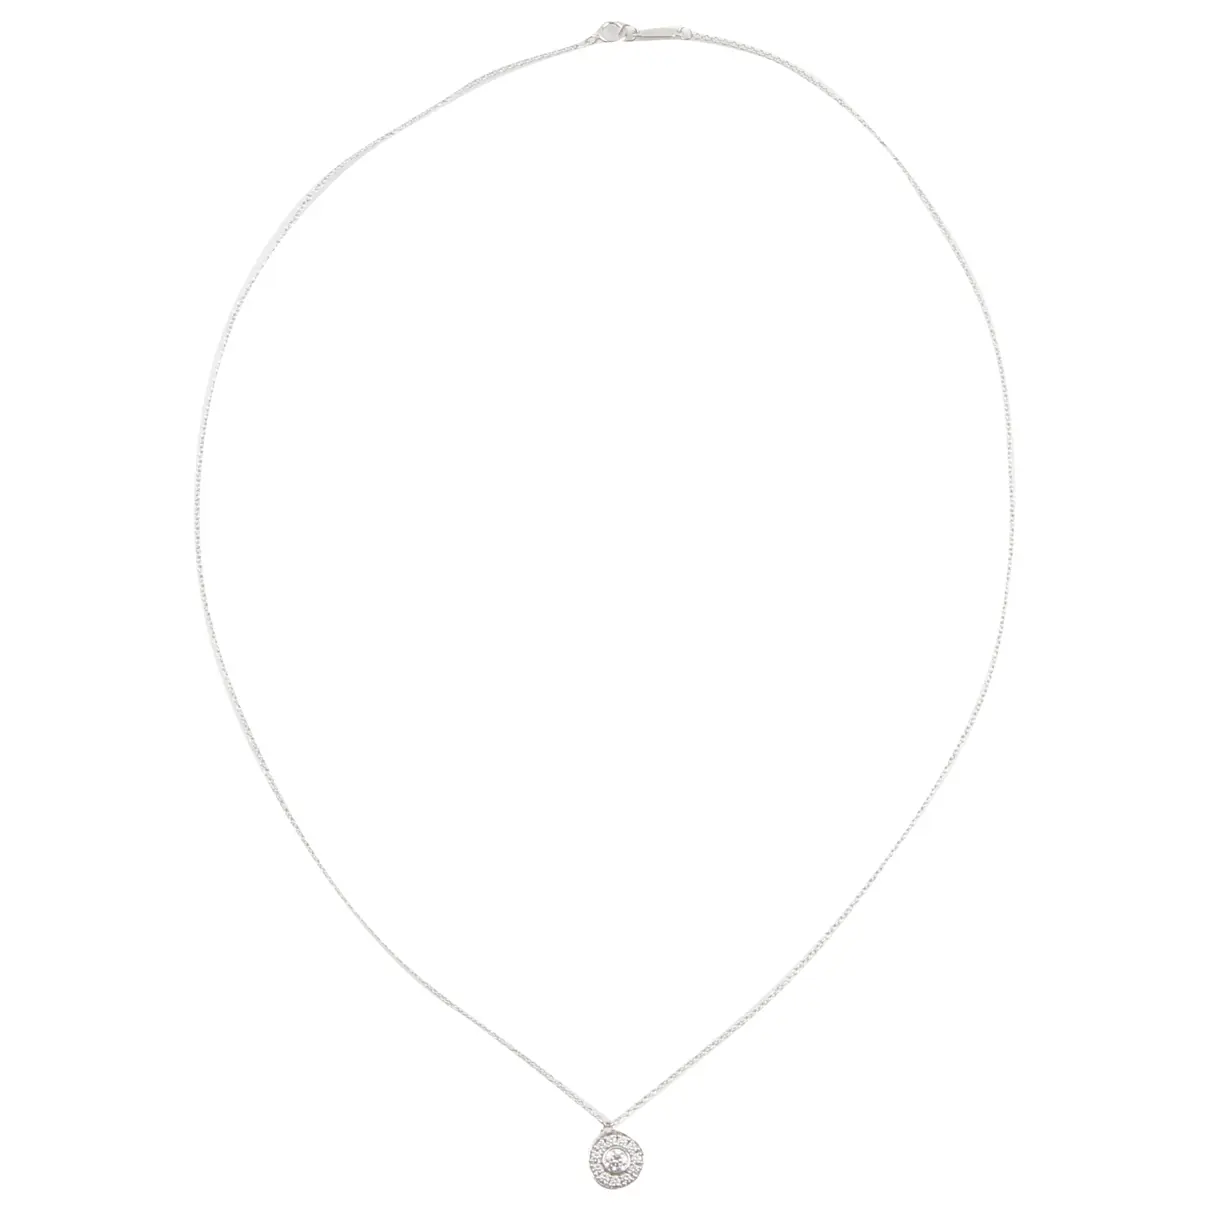 Tiffany Soleste platinum necklace